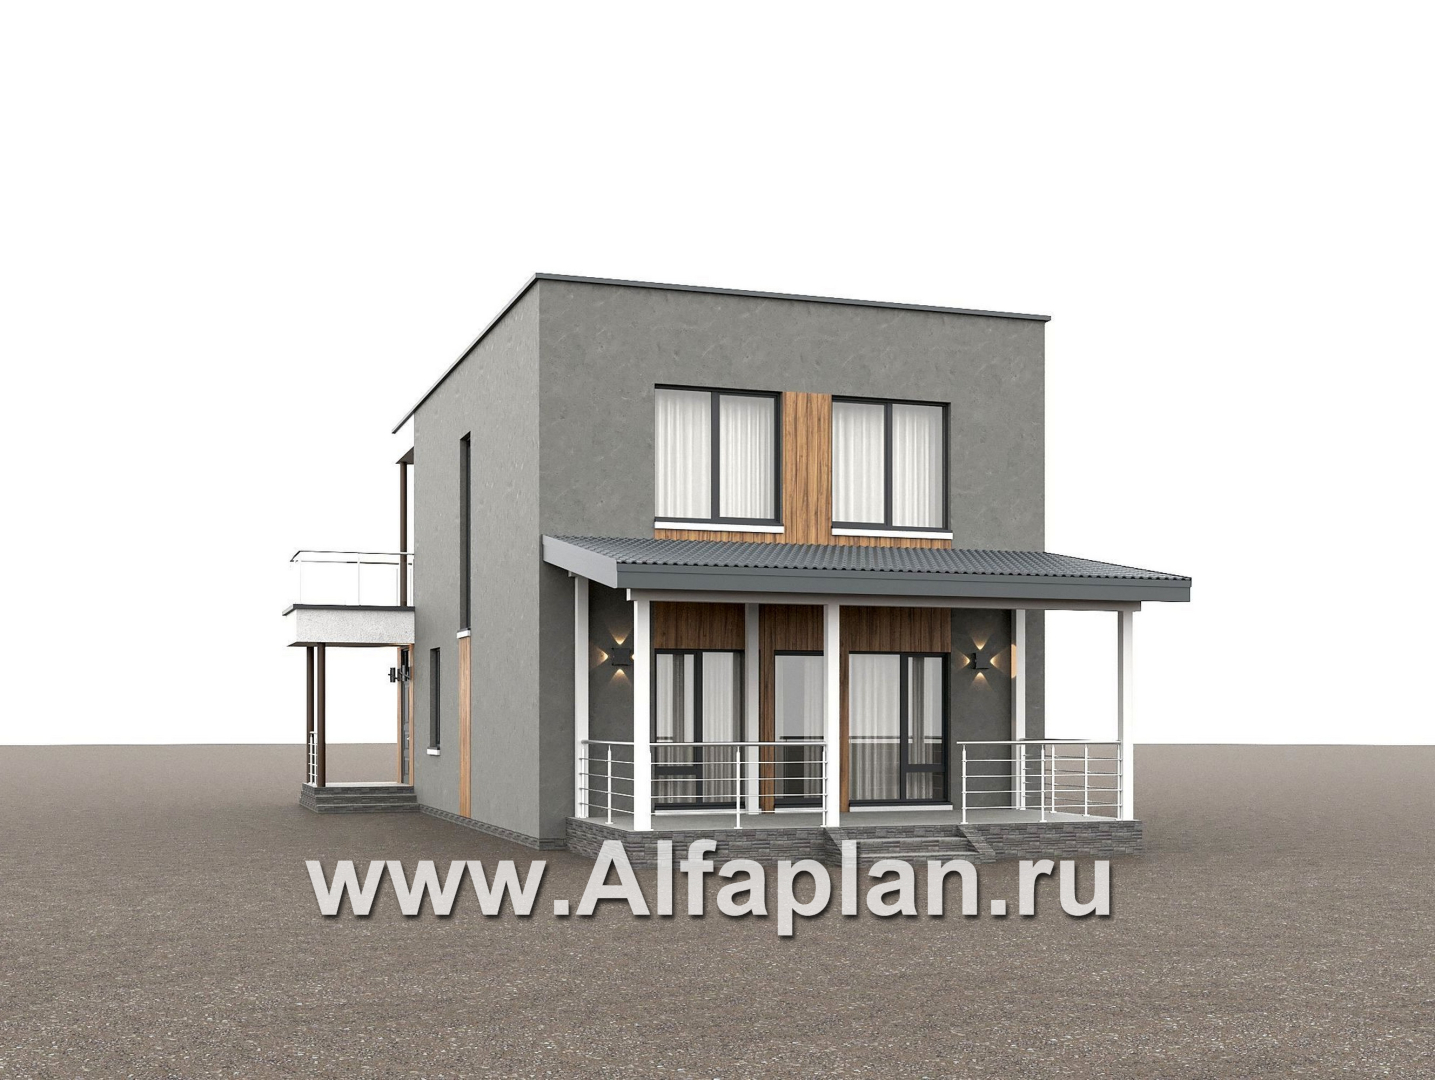 Проекты домов Альфаплан - "Викинг" - проект дома, 2 этажа, с сауной и с террасой, в стиле хай-тек - дополнительное изображение №3